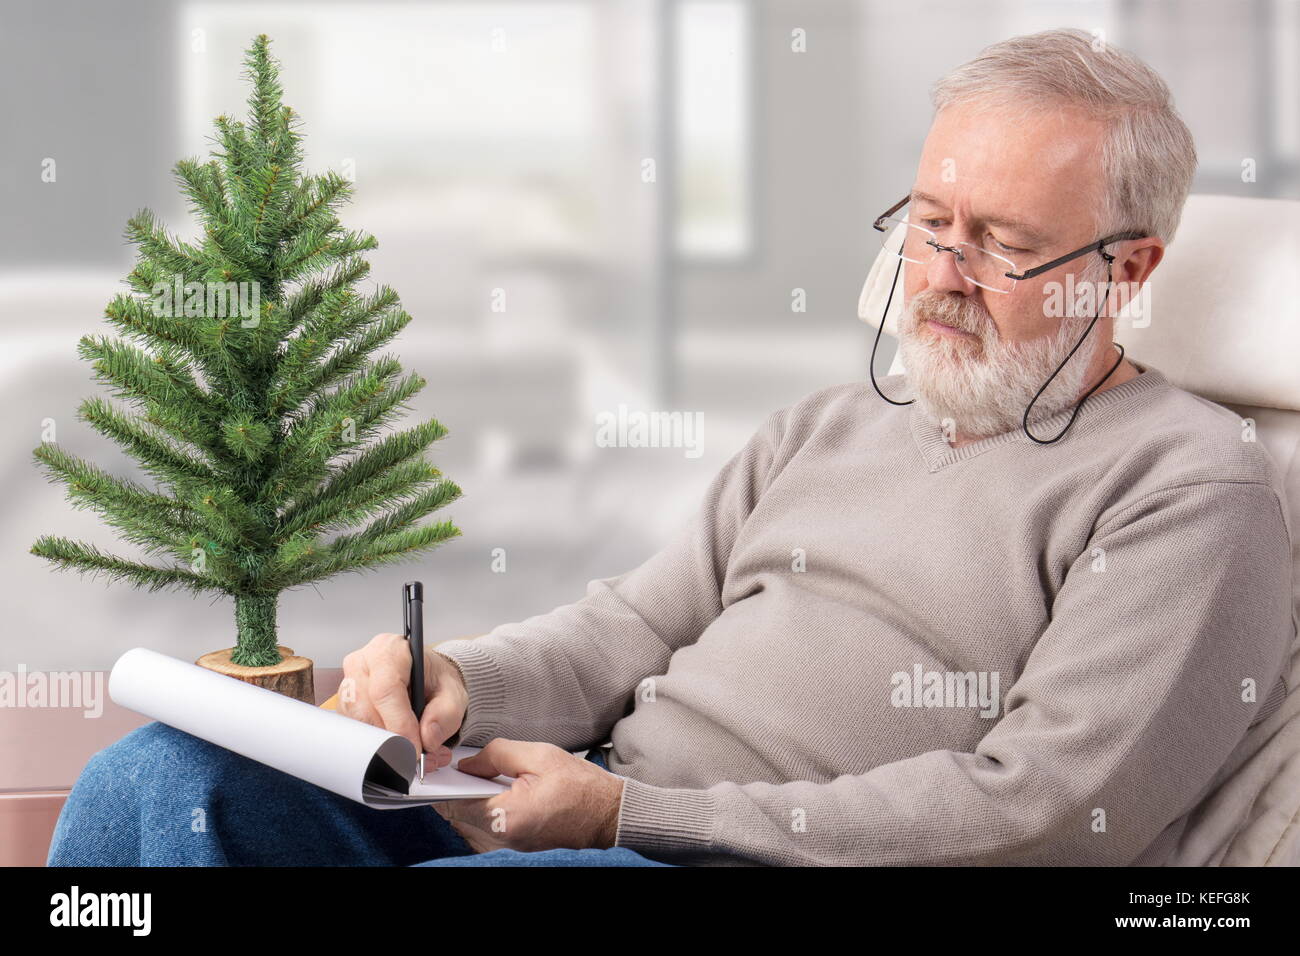 Il vecchio uomo che fa un elenco di acquisti su un foglio di carta con una penna accanto a un non decorato abete per vacanze di natale Foto Stock